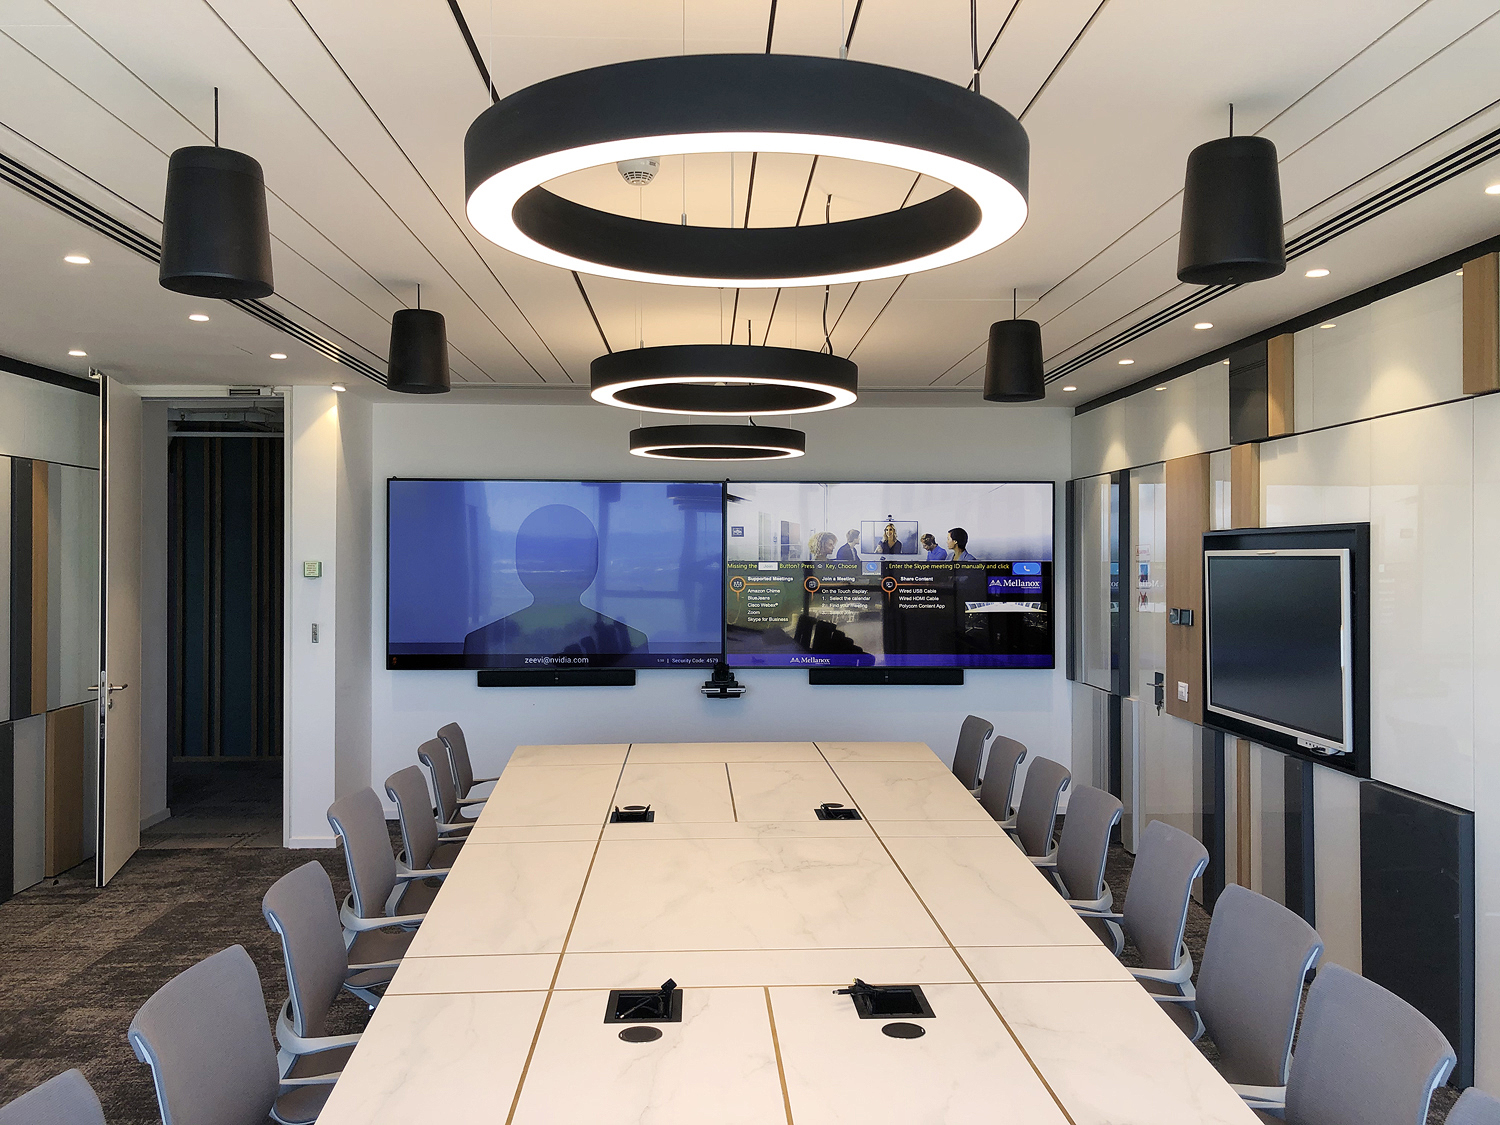 Каждая переговорная комната должна была сочетать в себе скромность и профессионализм, вмещая элегантный стол для переговоров, непрямое освещение и подвесные динамики SF 26PT Extron в чёрном исполнении.